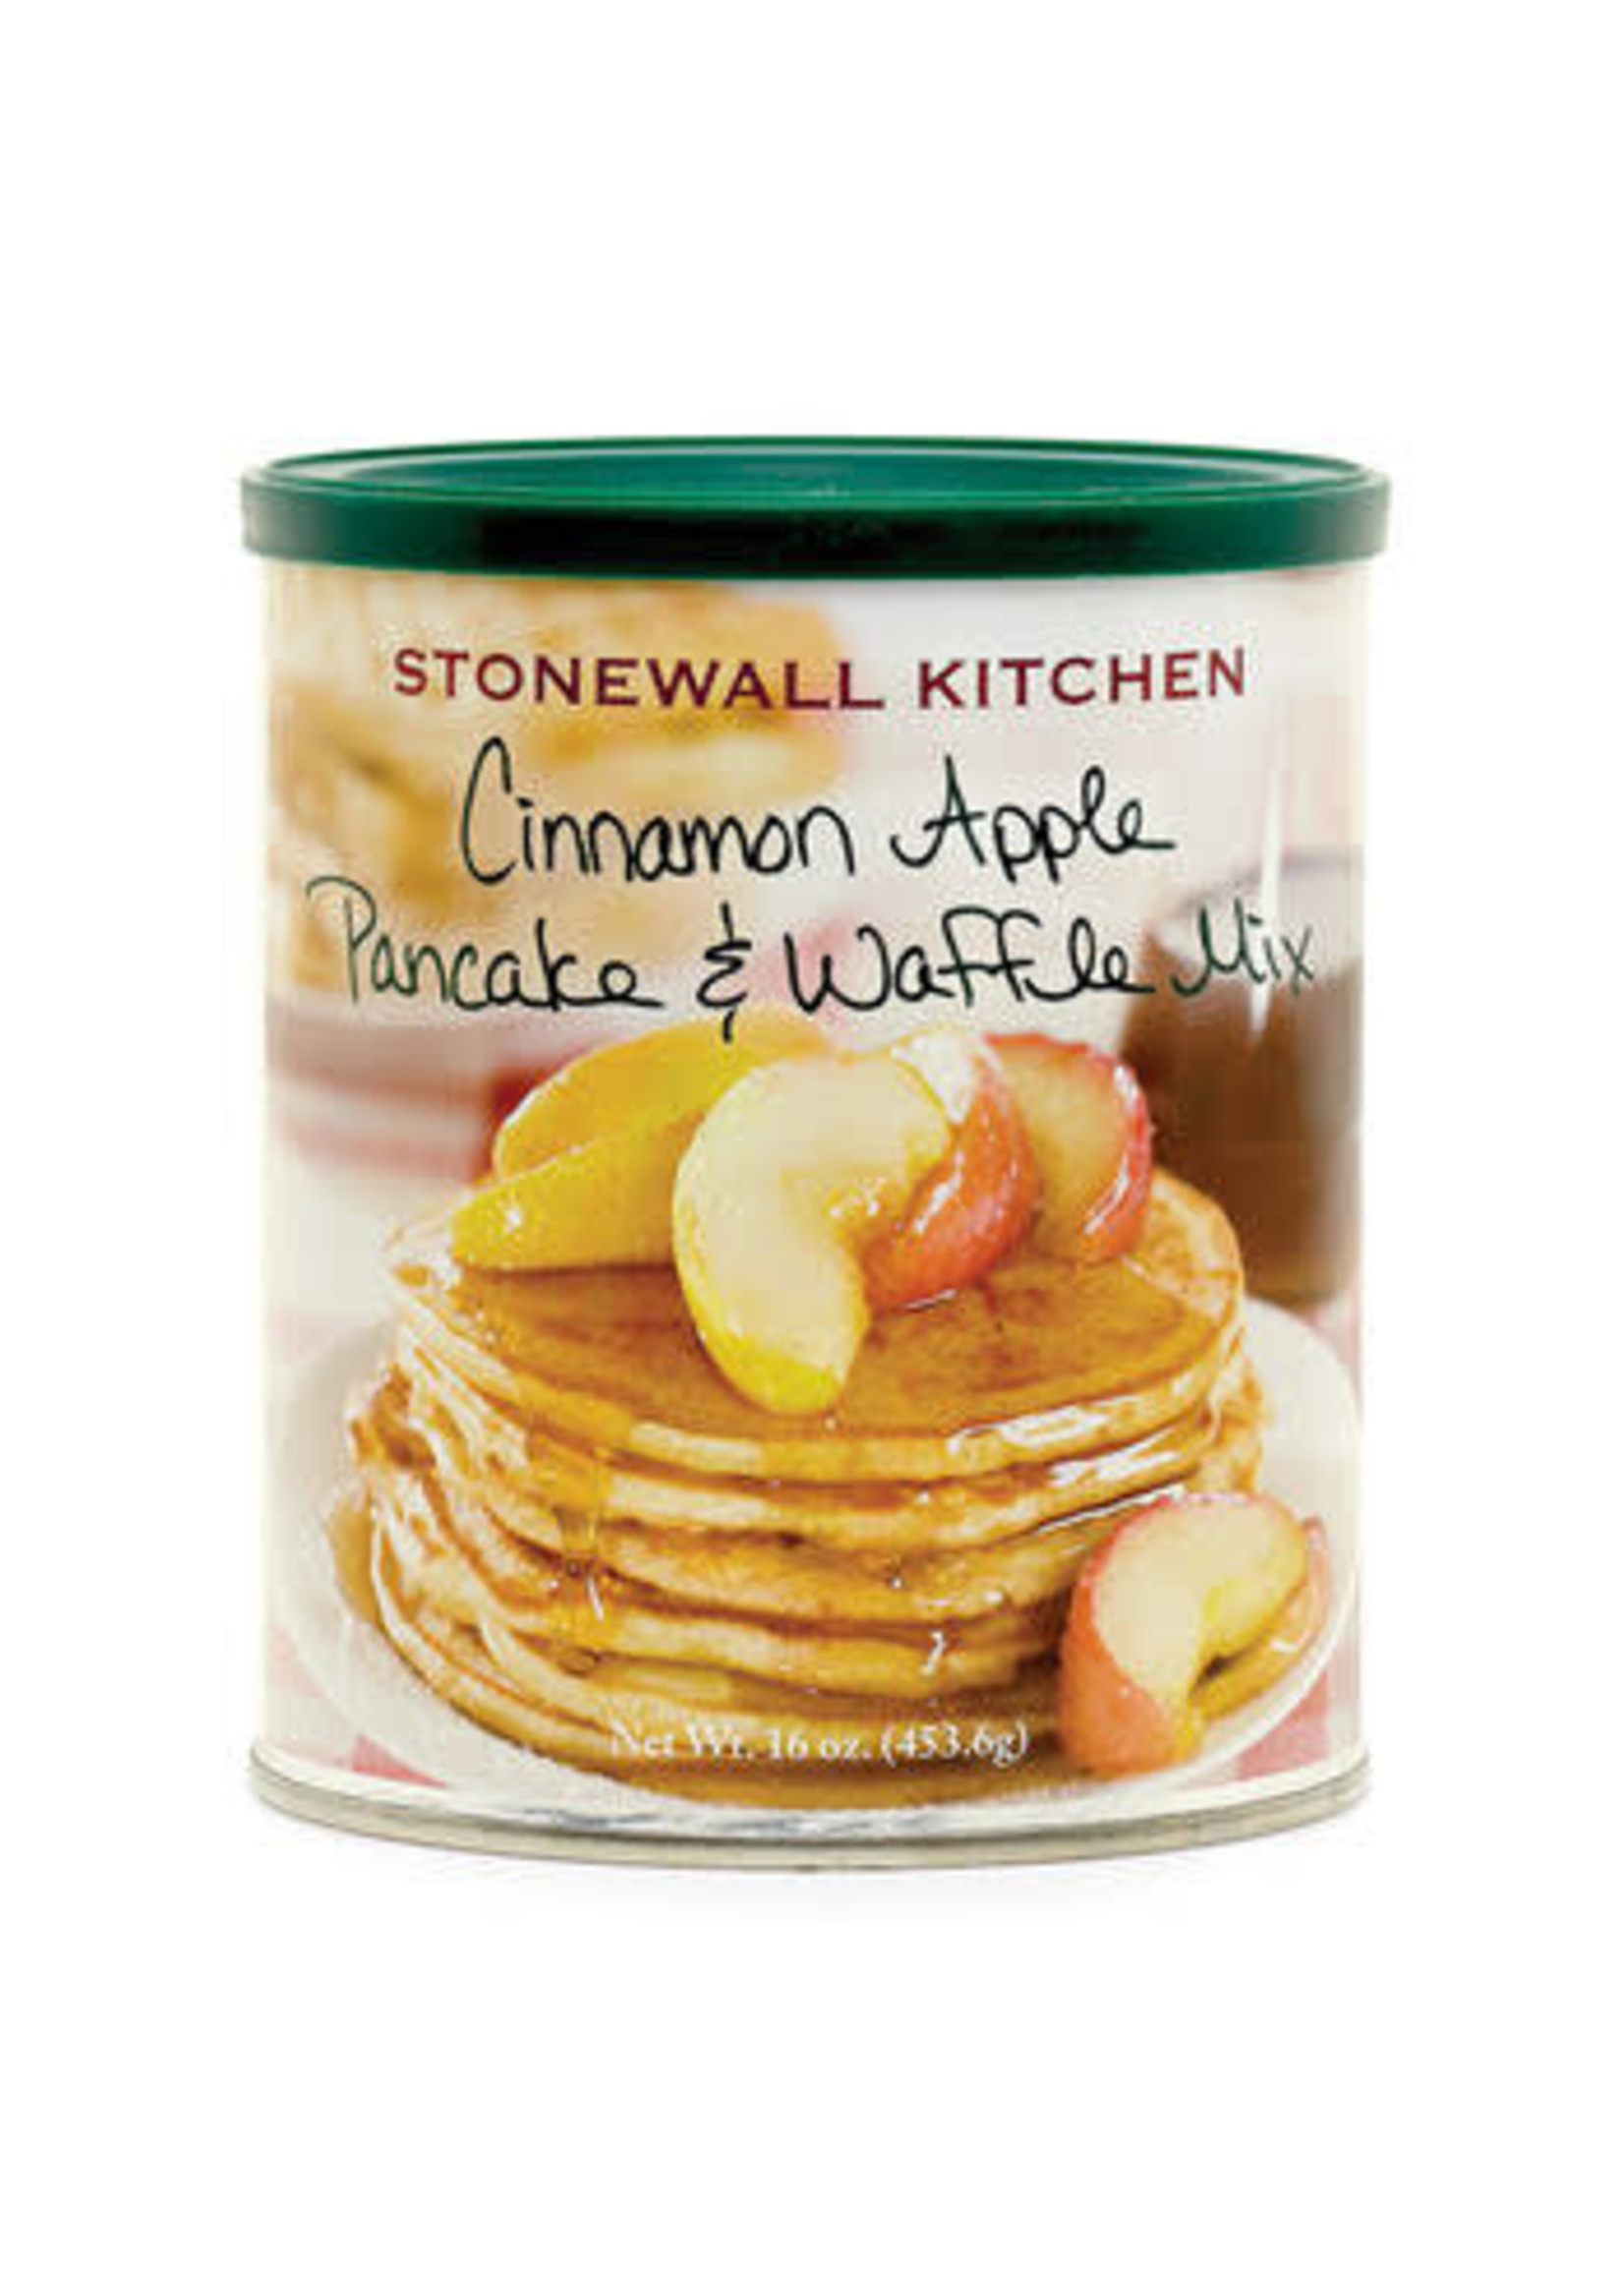 Stonewall Kitchen Cinnamon Apple Pancake & Waffle Mix